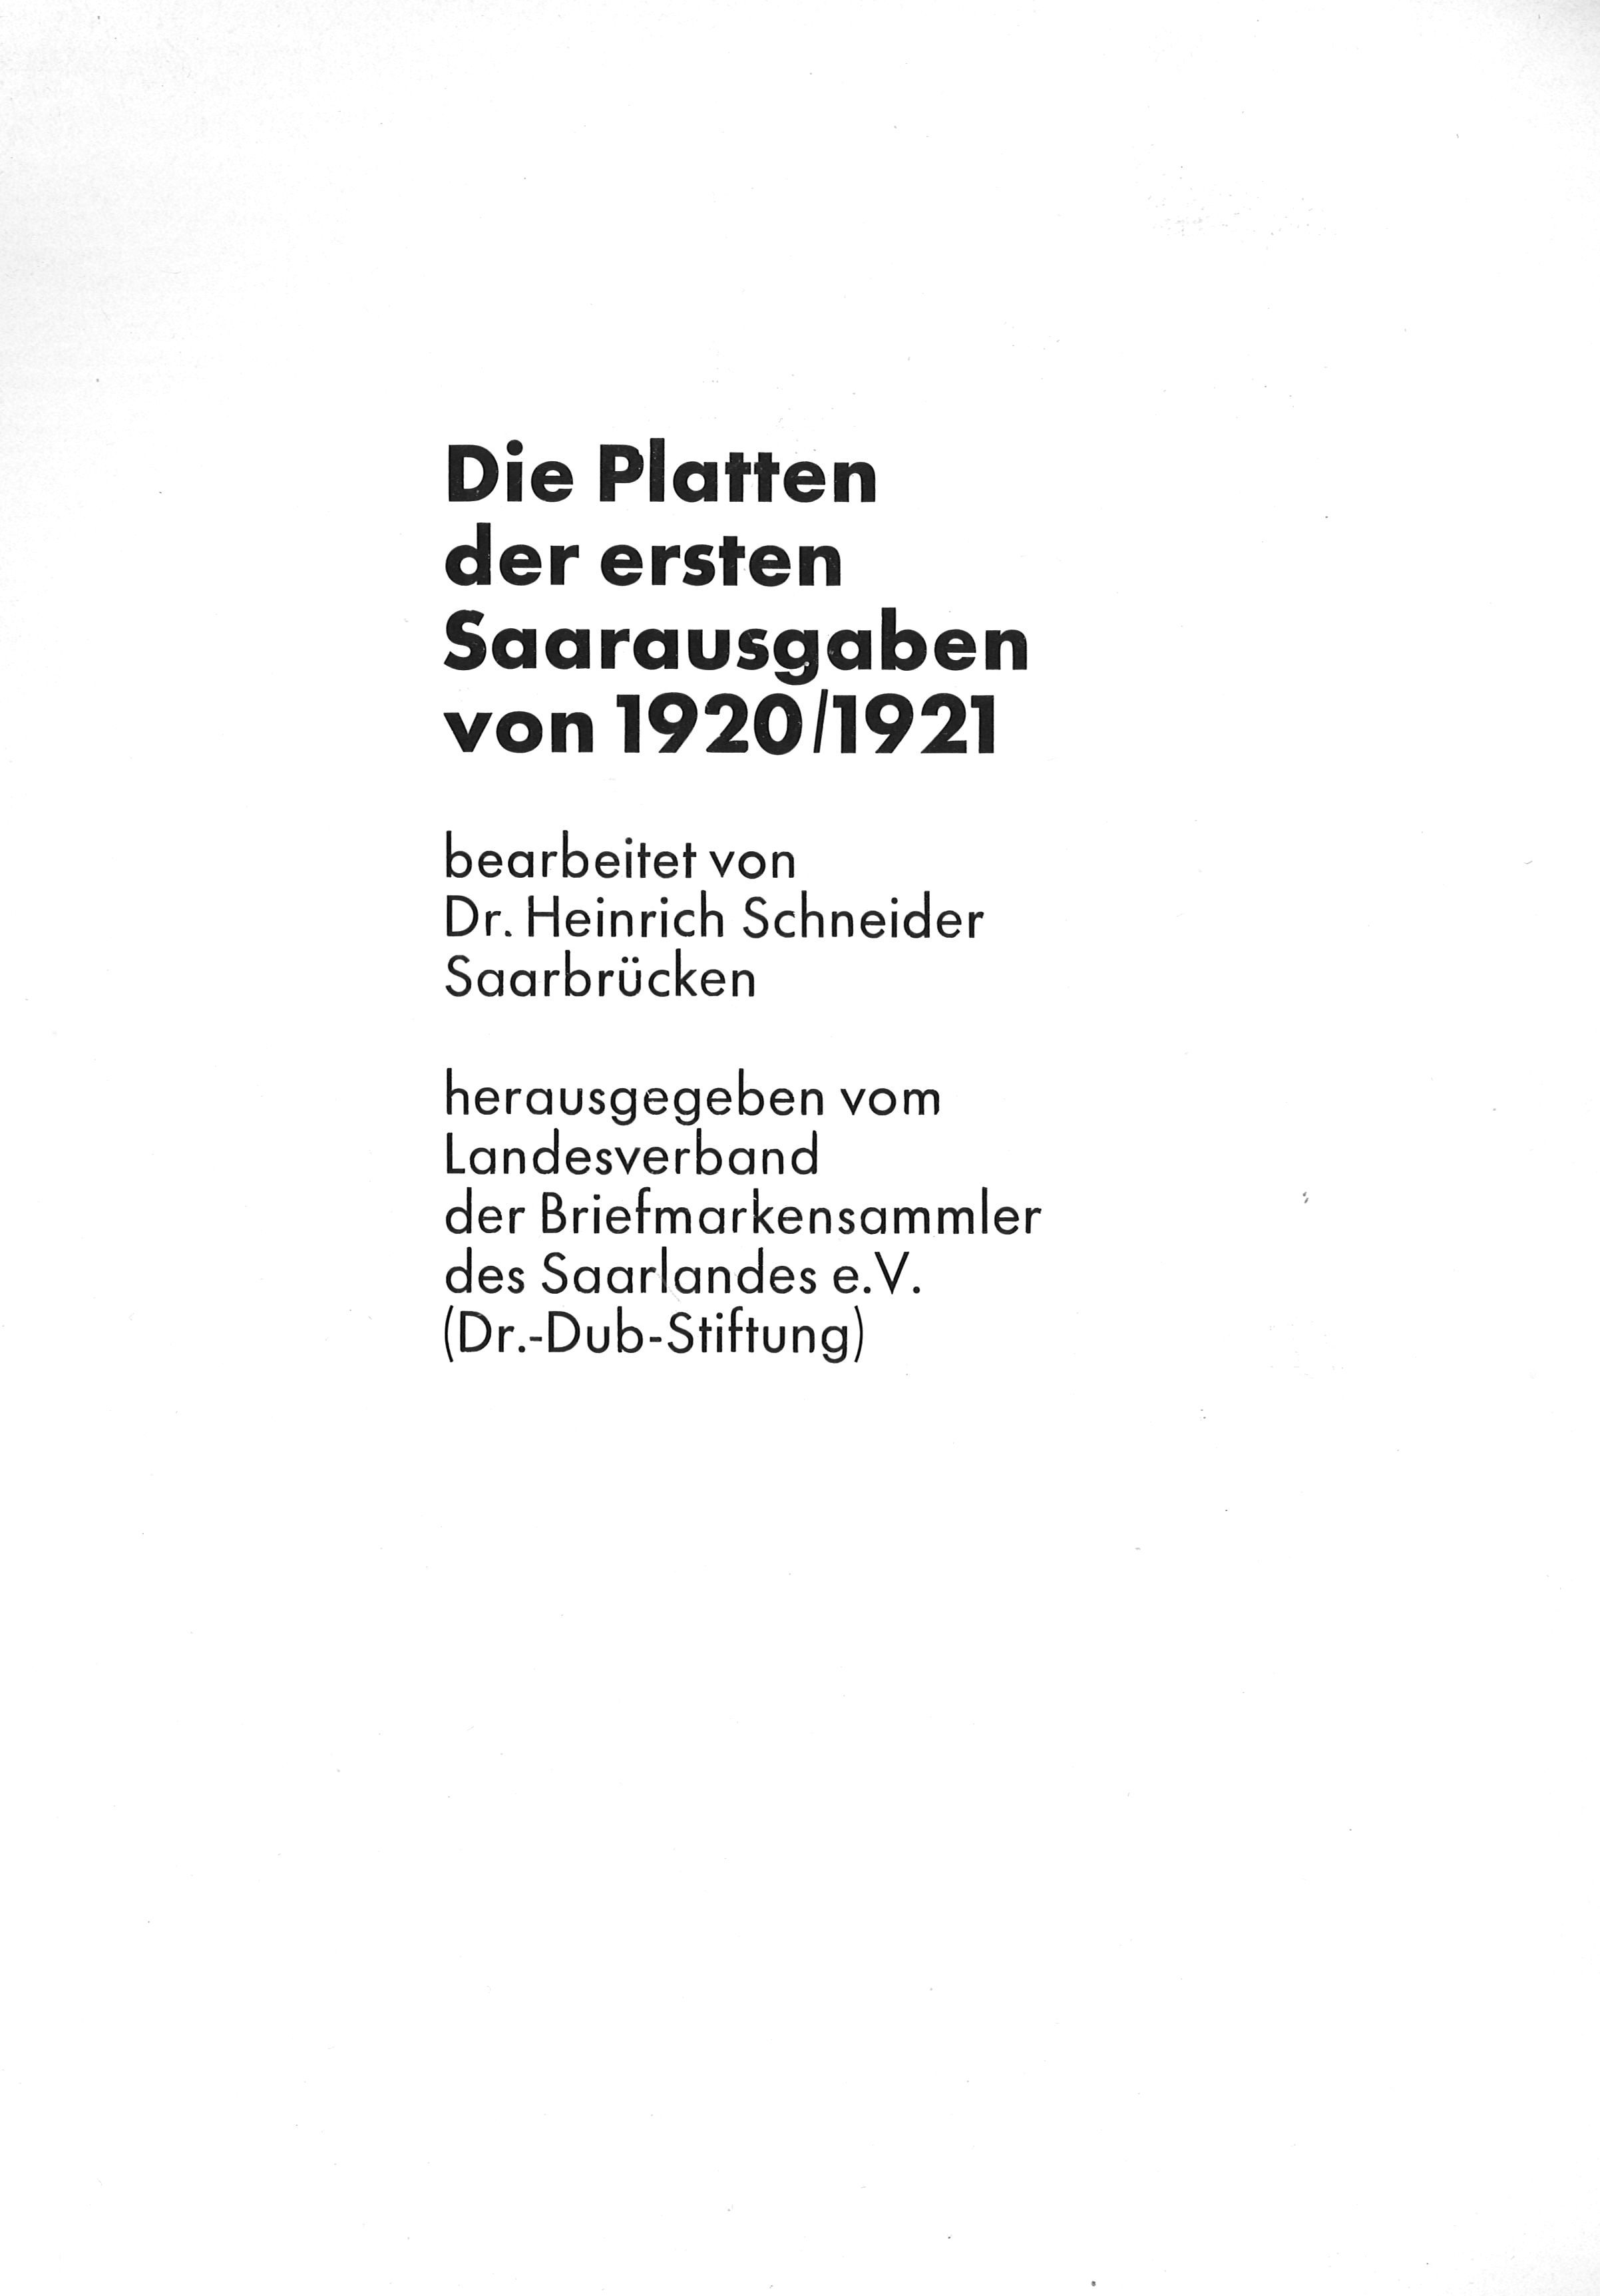 Schneider, Heinrich Die Platten der ersten Saarausgaben von 1920